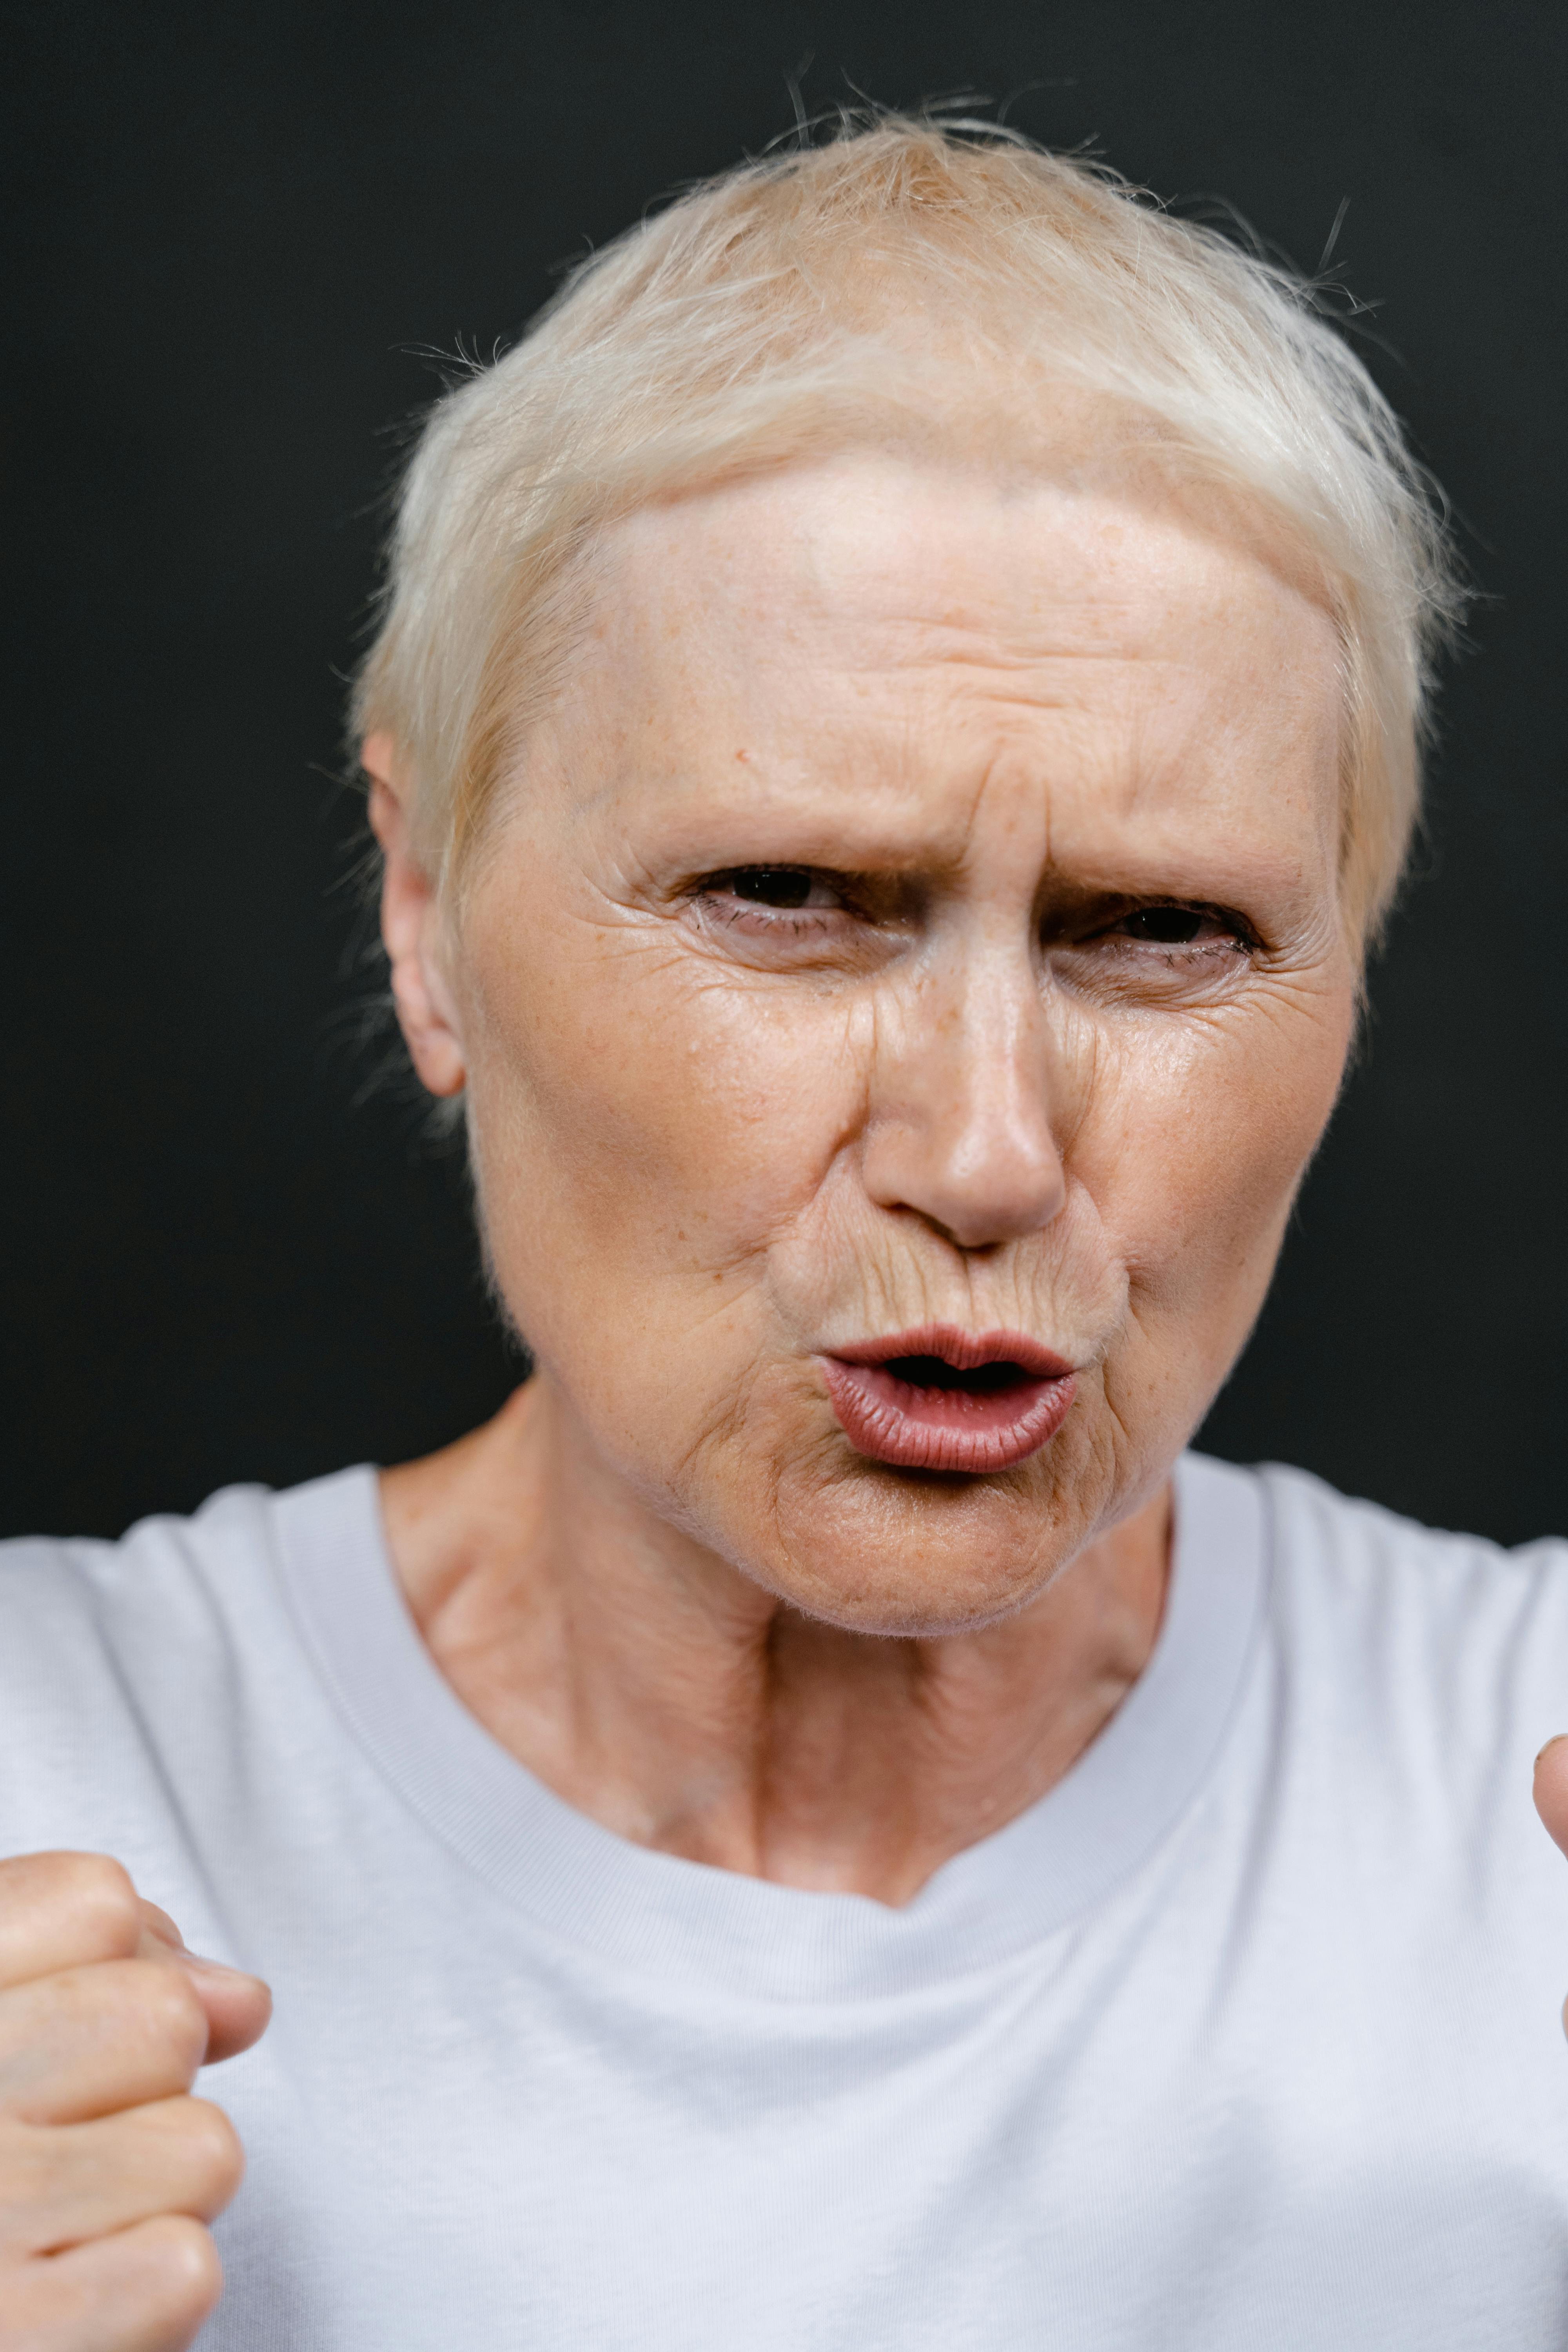 Eine wütende ältere Frau mit erhobenen Fäusten | Quelle: Pexels